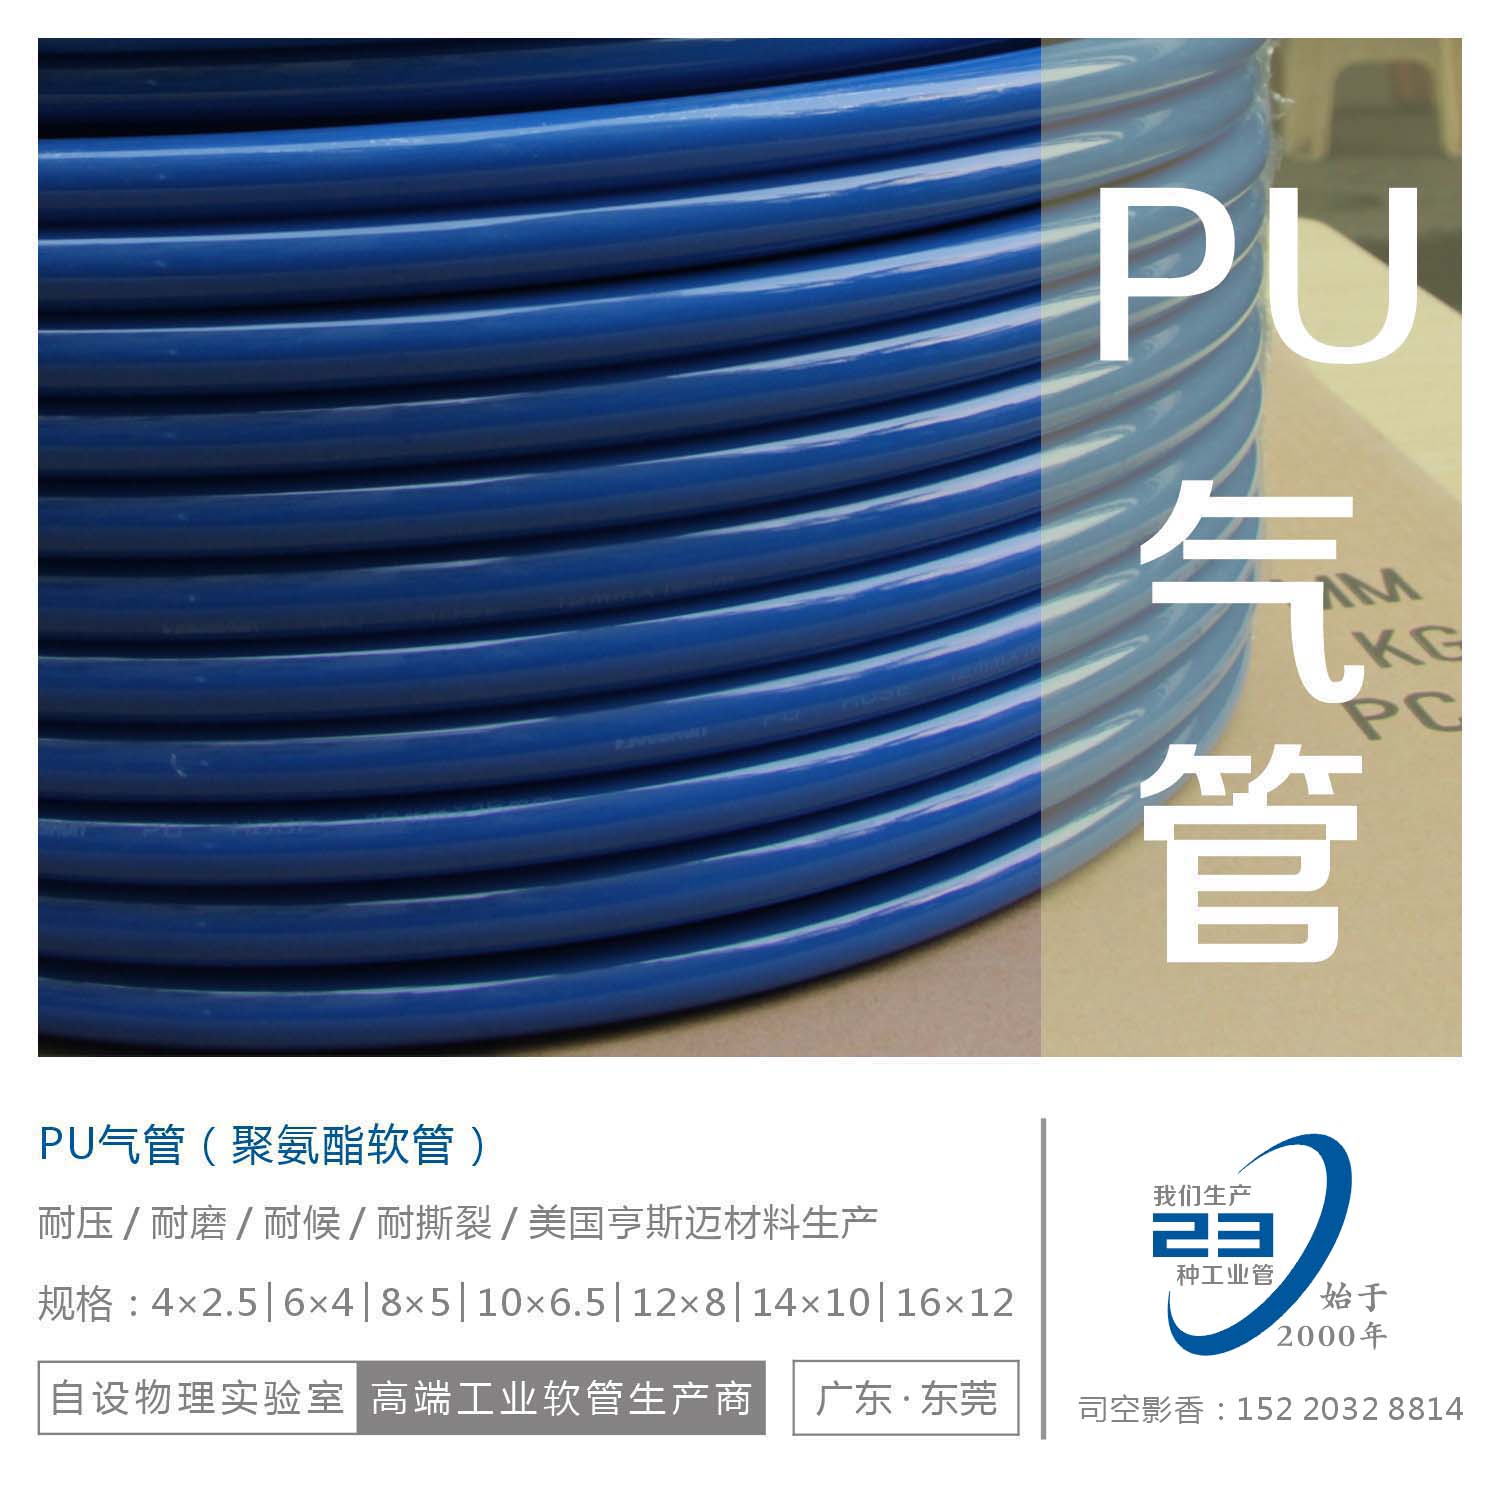 PU气管  气动软管  空压机软管  聚酯气管  聚氨酯气管 PU气动管